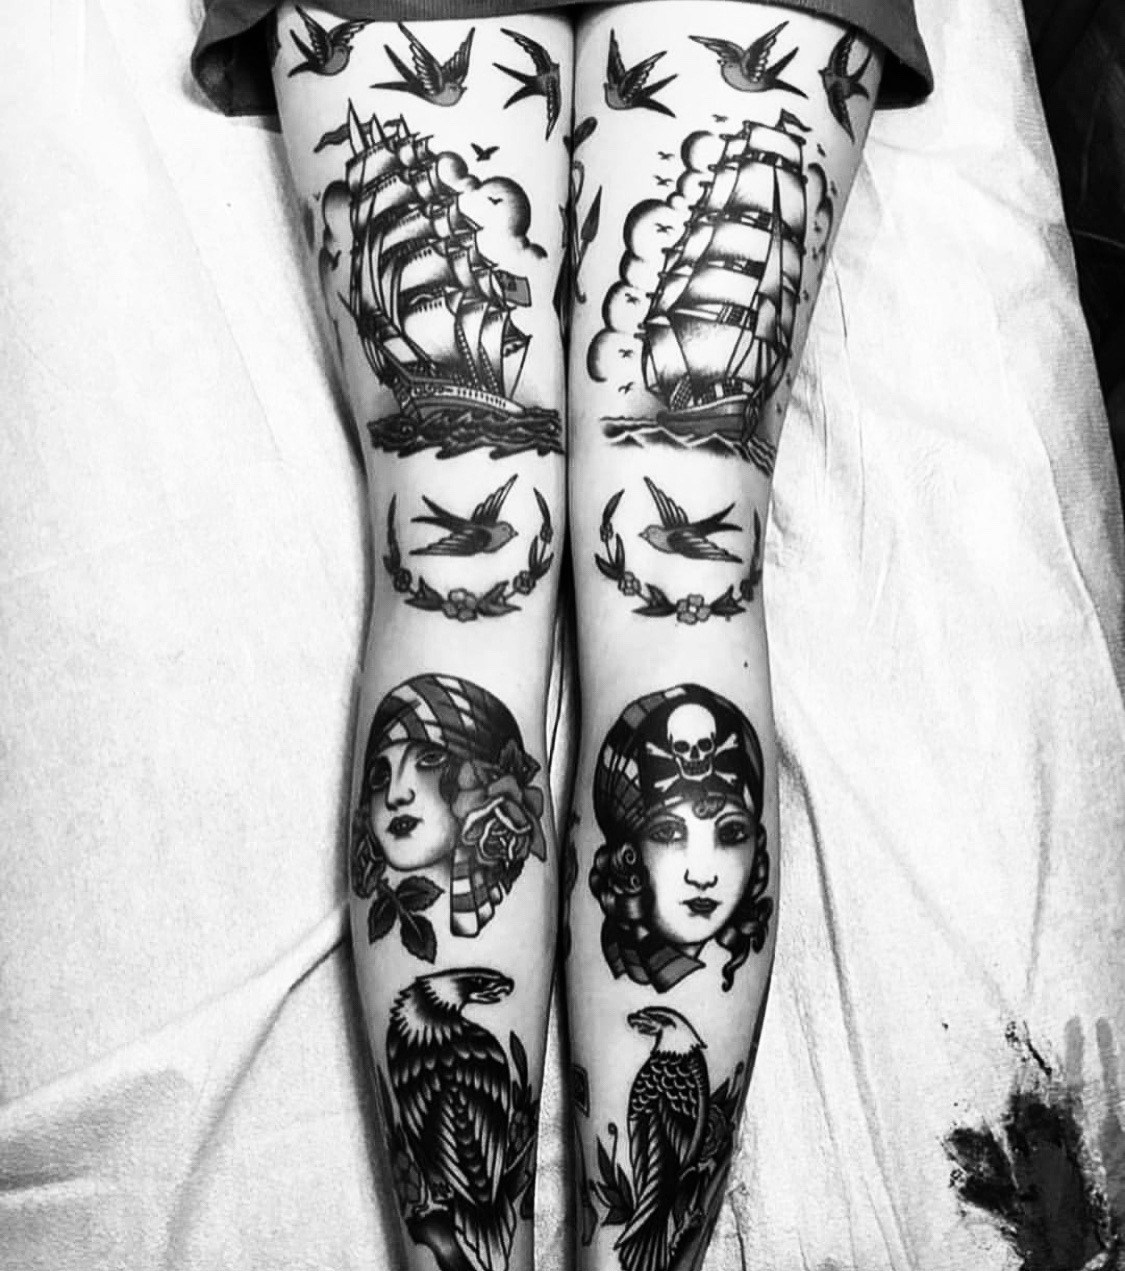 mccek:Tatuaggi folli #42✍🏻